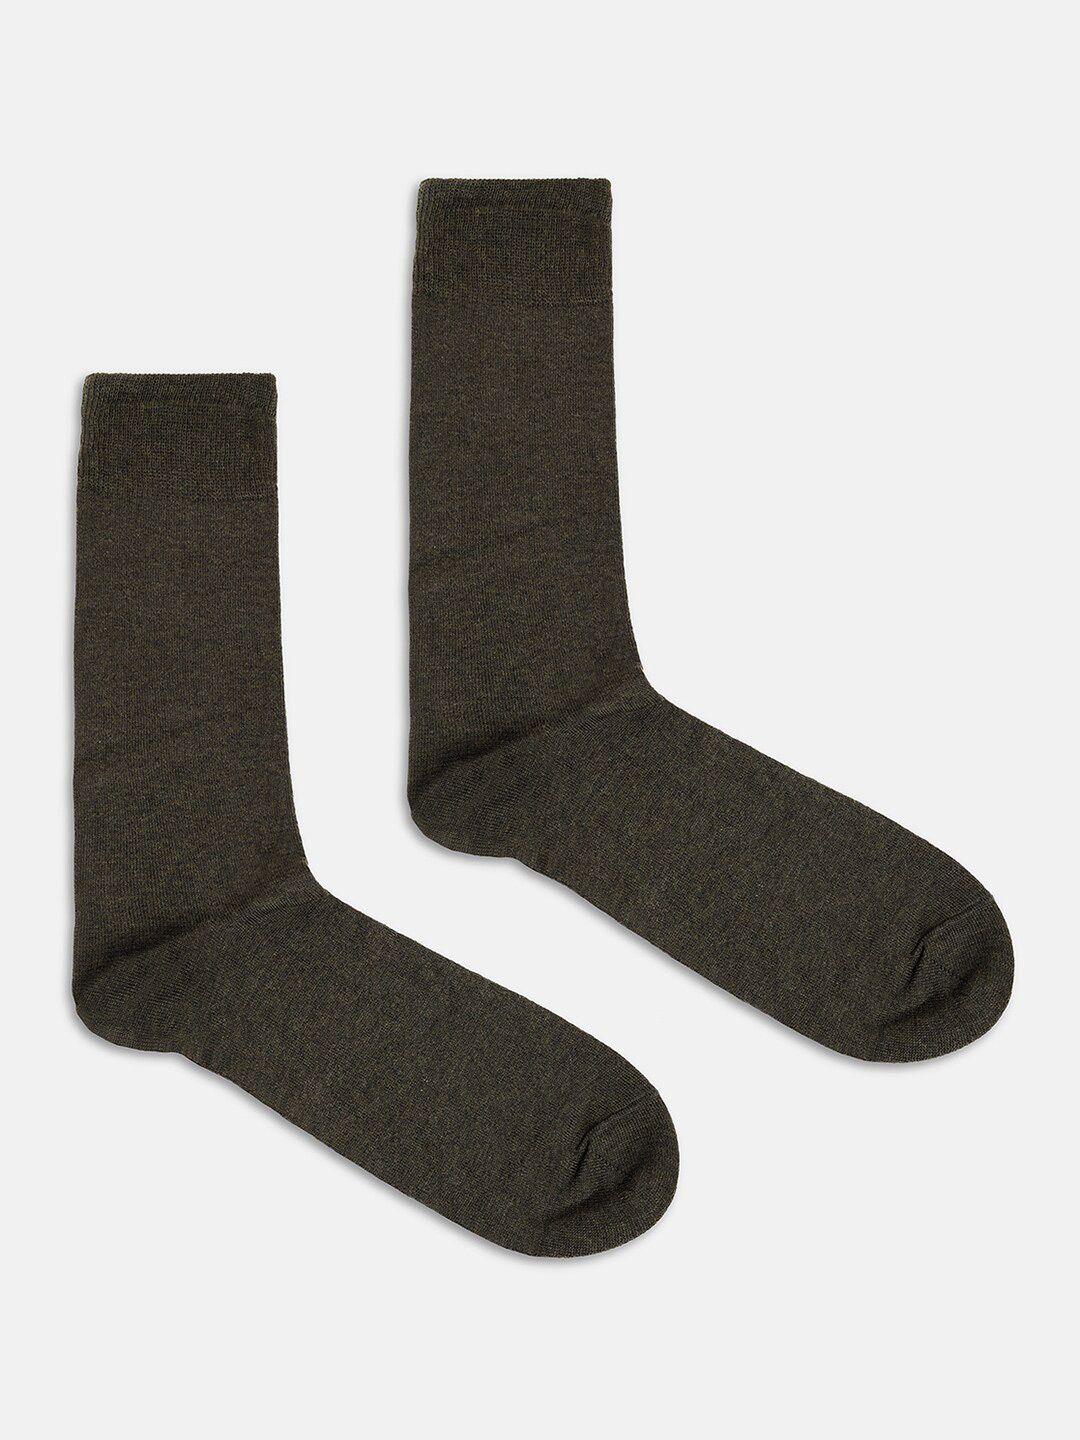 blackberrys men cotton calf-length socks